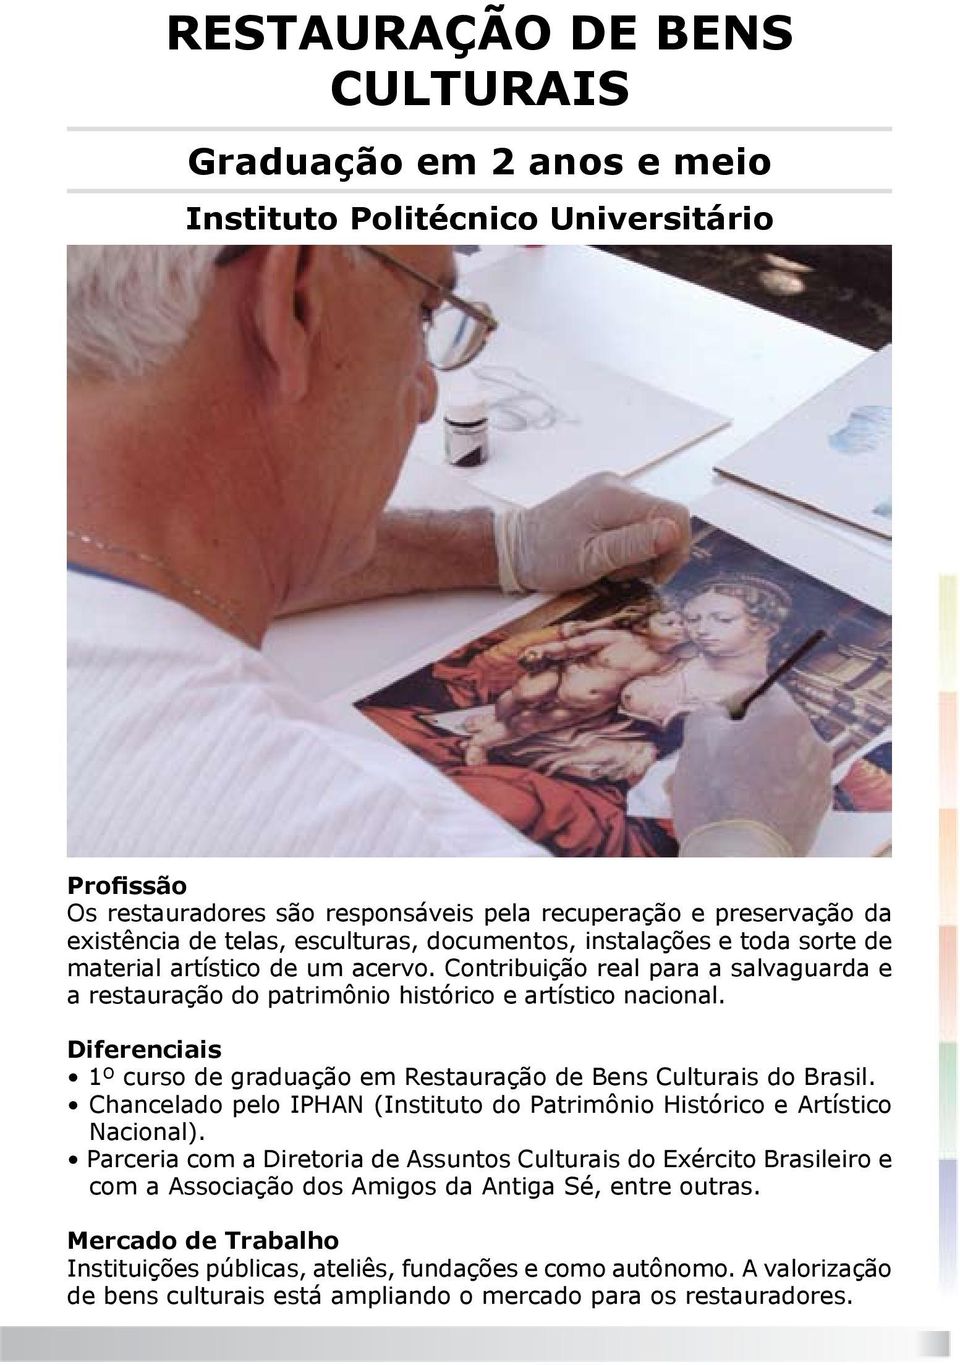 Diferenciais 1º curso de graduação em Restauração de Bens Culturais do Brasil. Chancelado pelo IPHAN (Instituto do Patrimônio Histórico e Artístico Nacional).